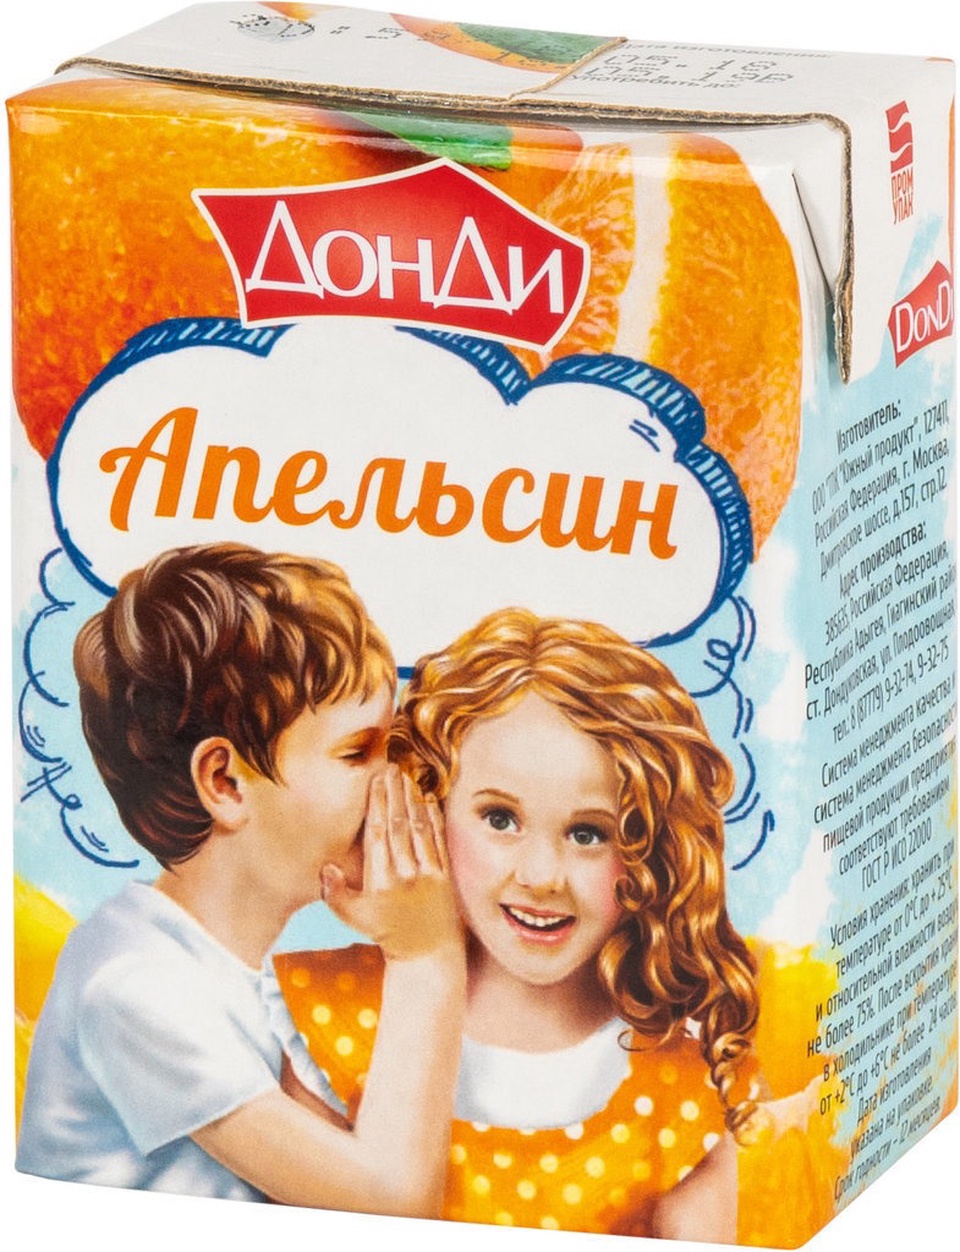 ДонДи сок апельсиновый 0.2л т/п - 27 ₽, заказать онлайн.